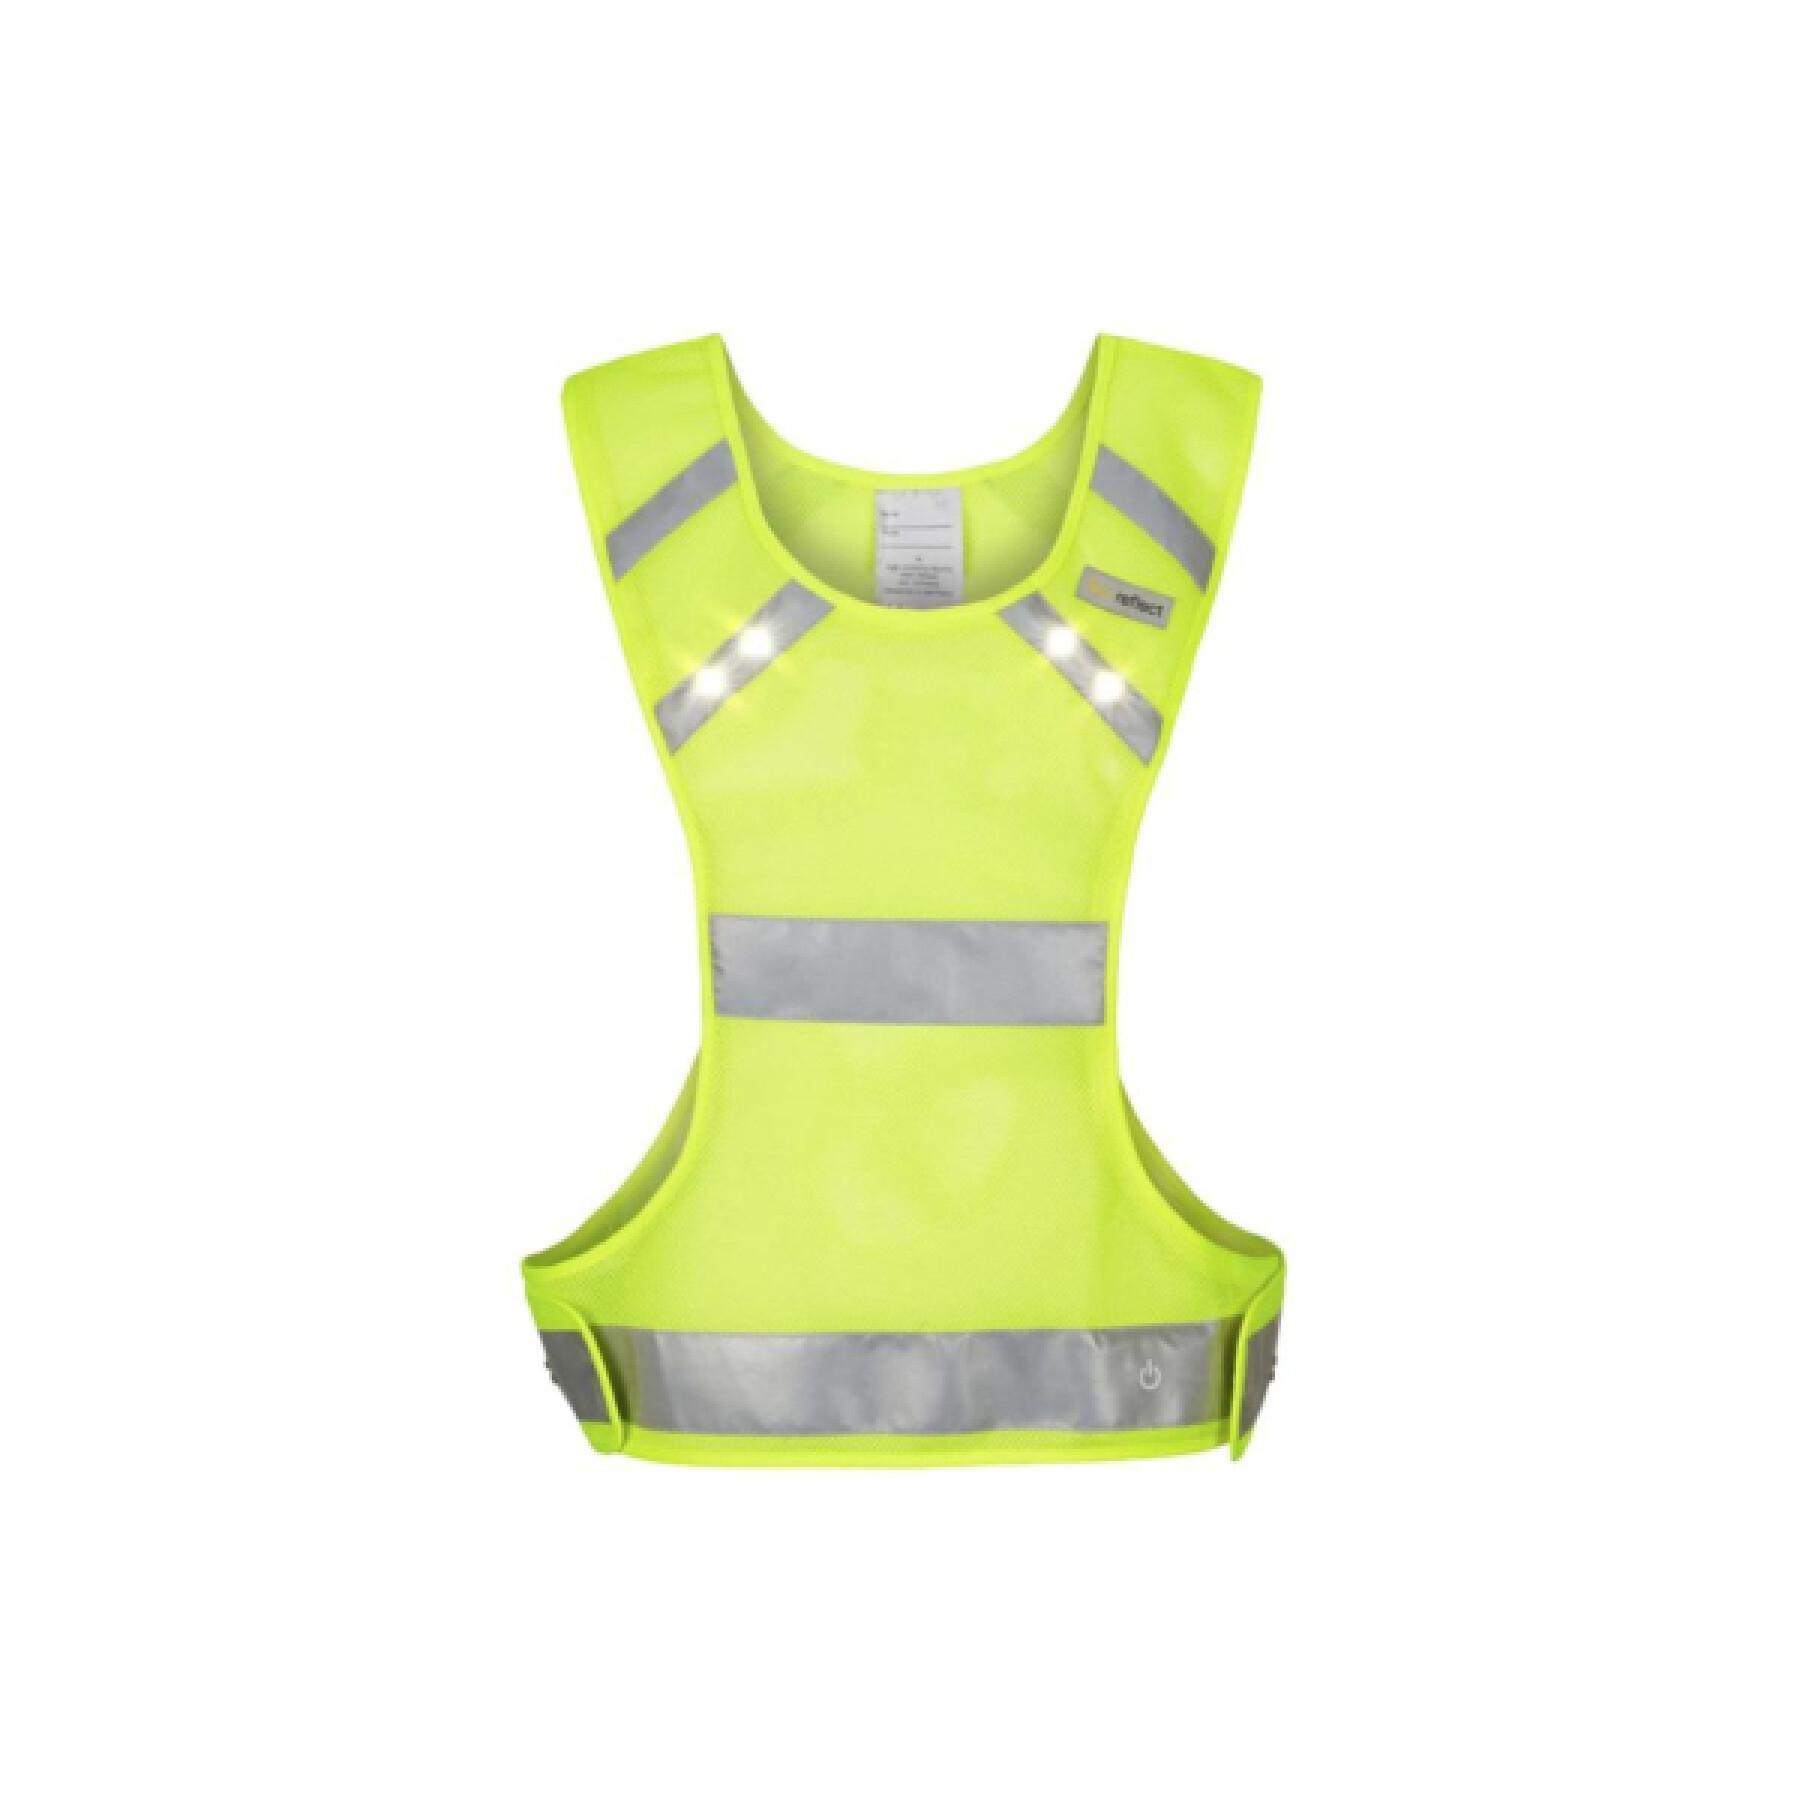 Gilet jaune de sécurité fluo adulte (vélo, running, trottinette) – Le Gilet  Lumière